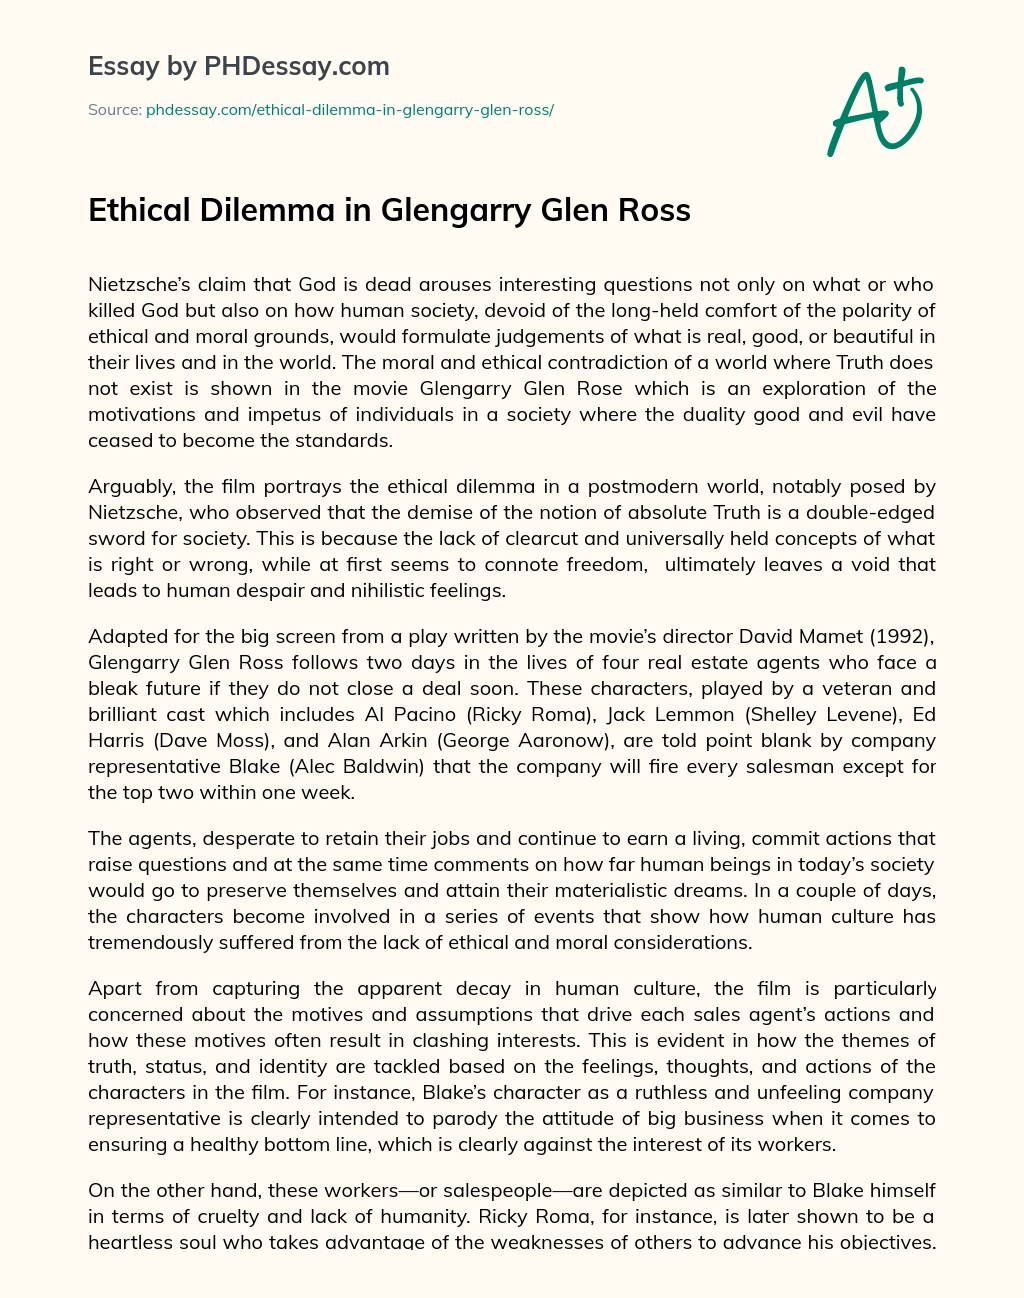 Ethical Dilemma in Glengarry Glen Ross essay